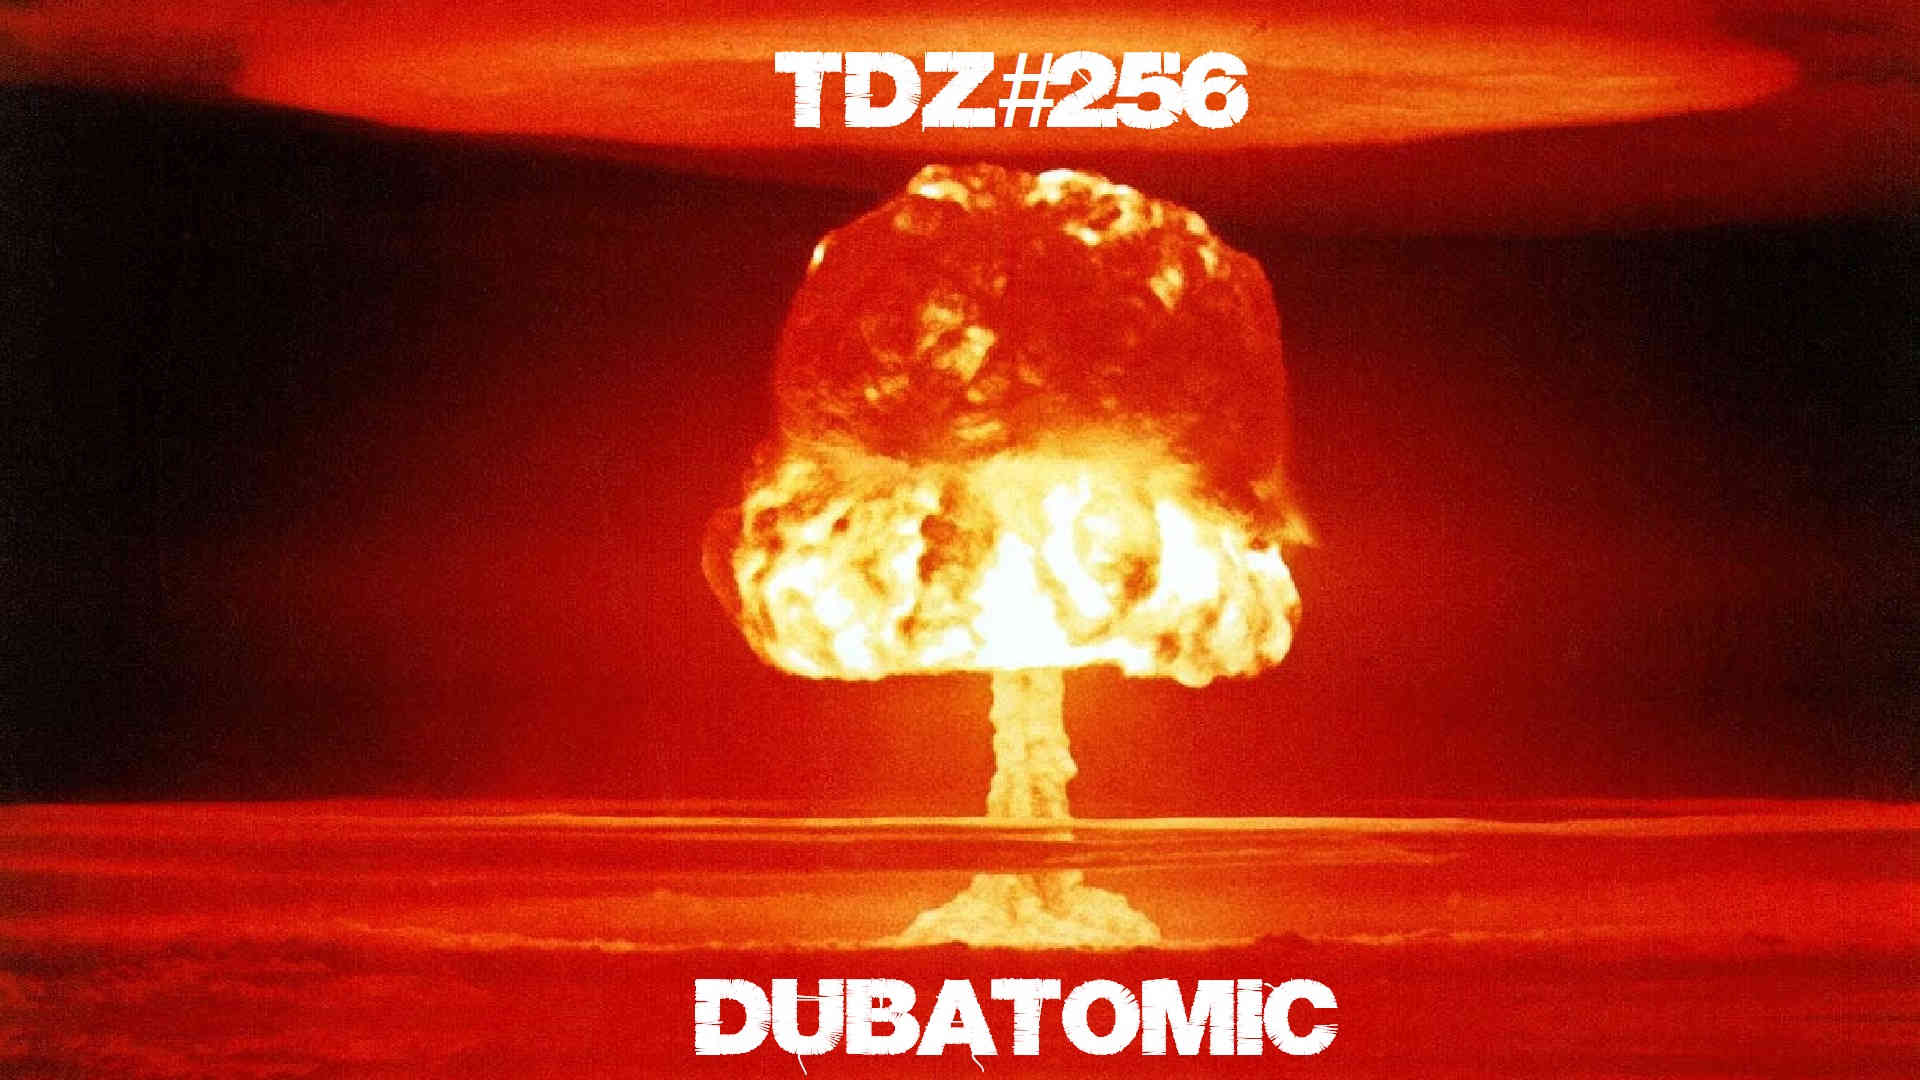 TDZ#256... Dubatomic...